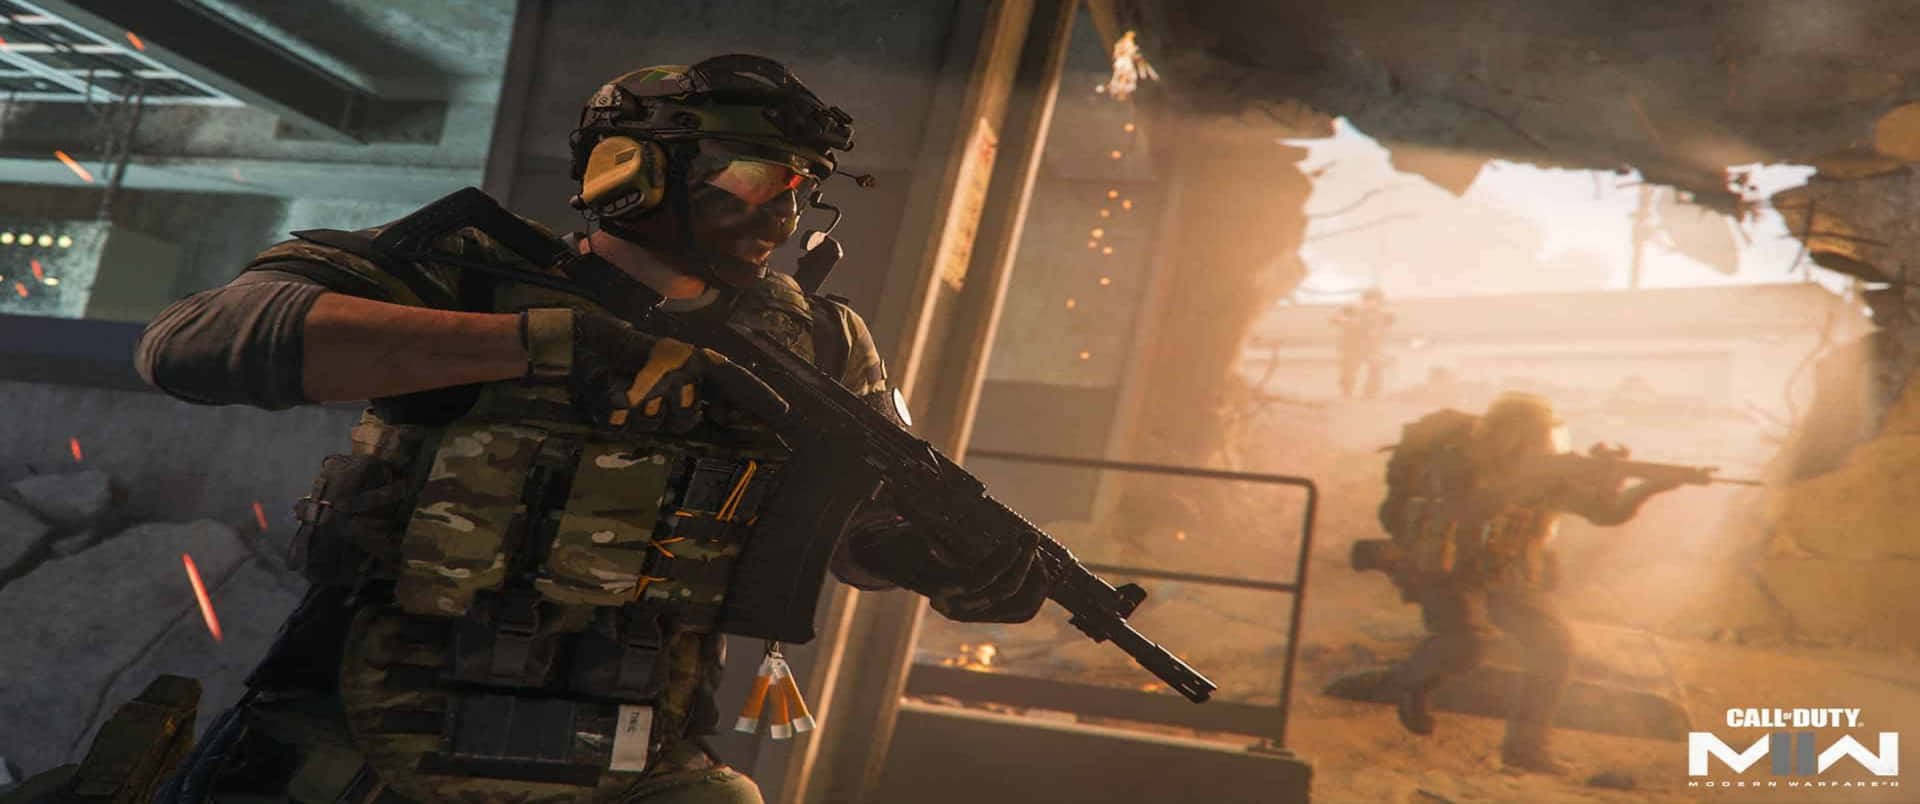 John Price Ambush 3440x1440p Call Of Duty Modern Warfare Background